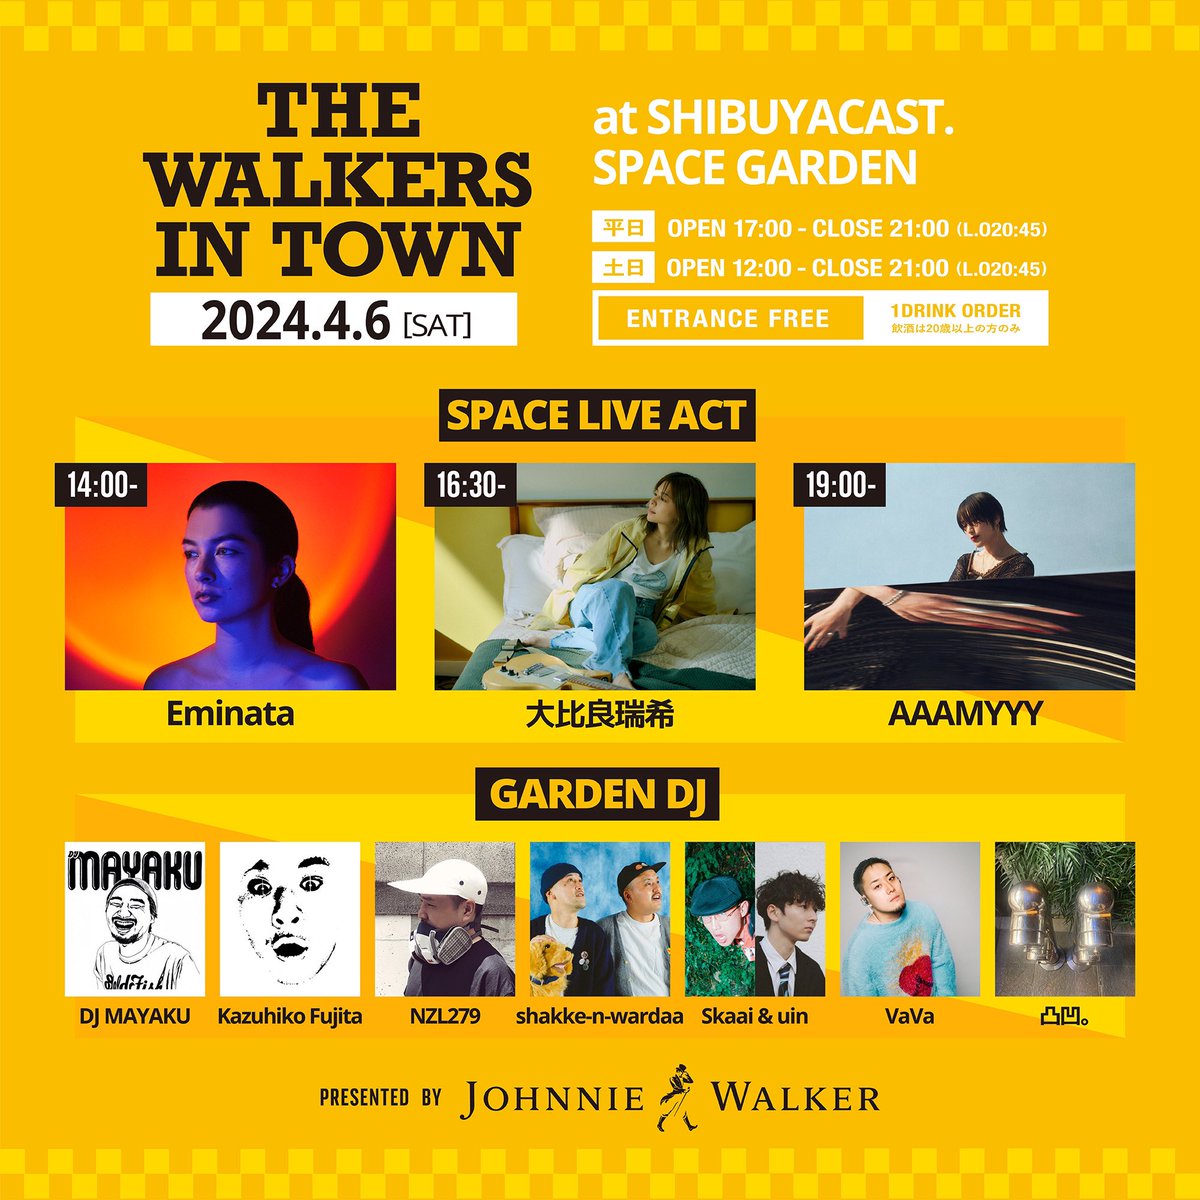 THE WALKERS IN TOWN presented by JOHNNIE WALKER 2024年4月6日(土) 12:00-21:00 at SHIBUYA CAST. SPACE GARDEN 東京都渋谷区渋谷1-23-21 ENTRANCE FREE (with 1Drink Order) DJs: DJ MAYAKU Kazuhiko Fujita NZL279 shakke-n-wardaa Skaai & uin VaVa 凸凹。 event.spaceshower.jp/johnniewalker/…